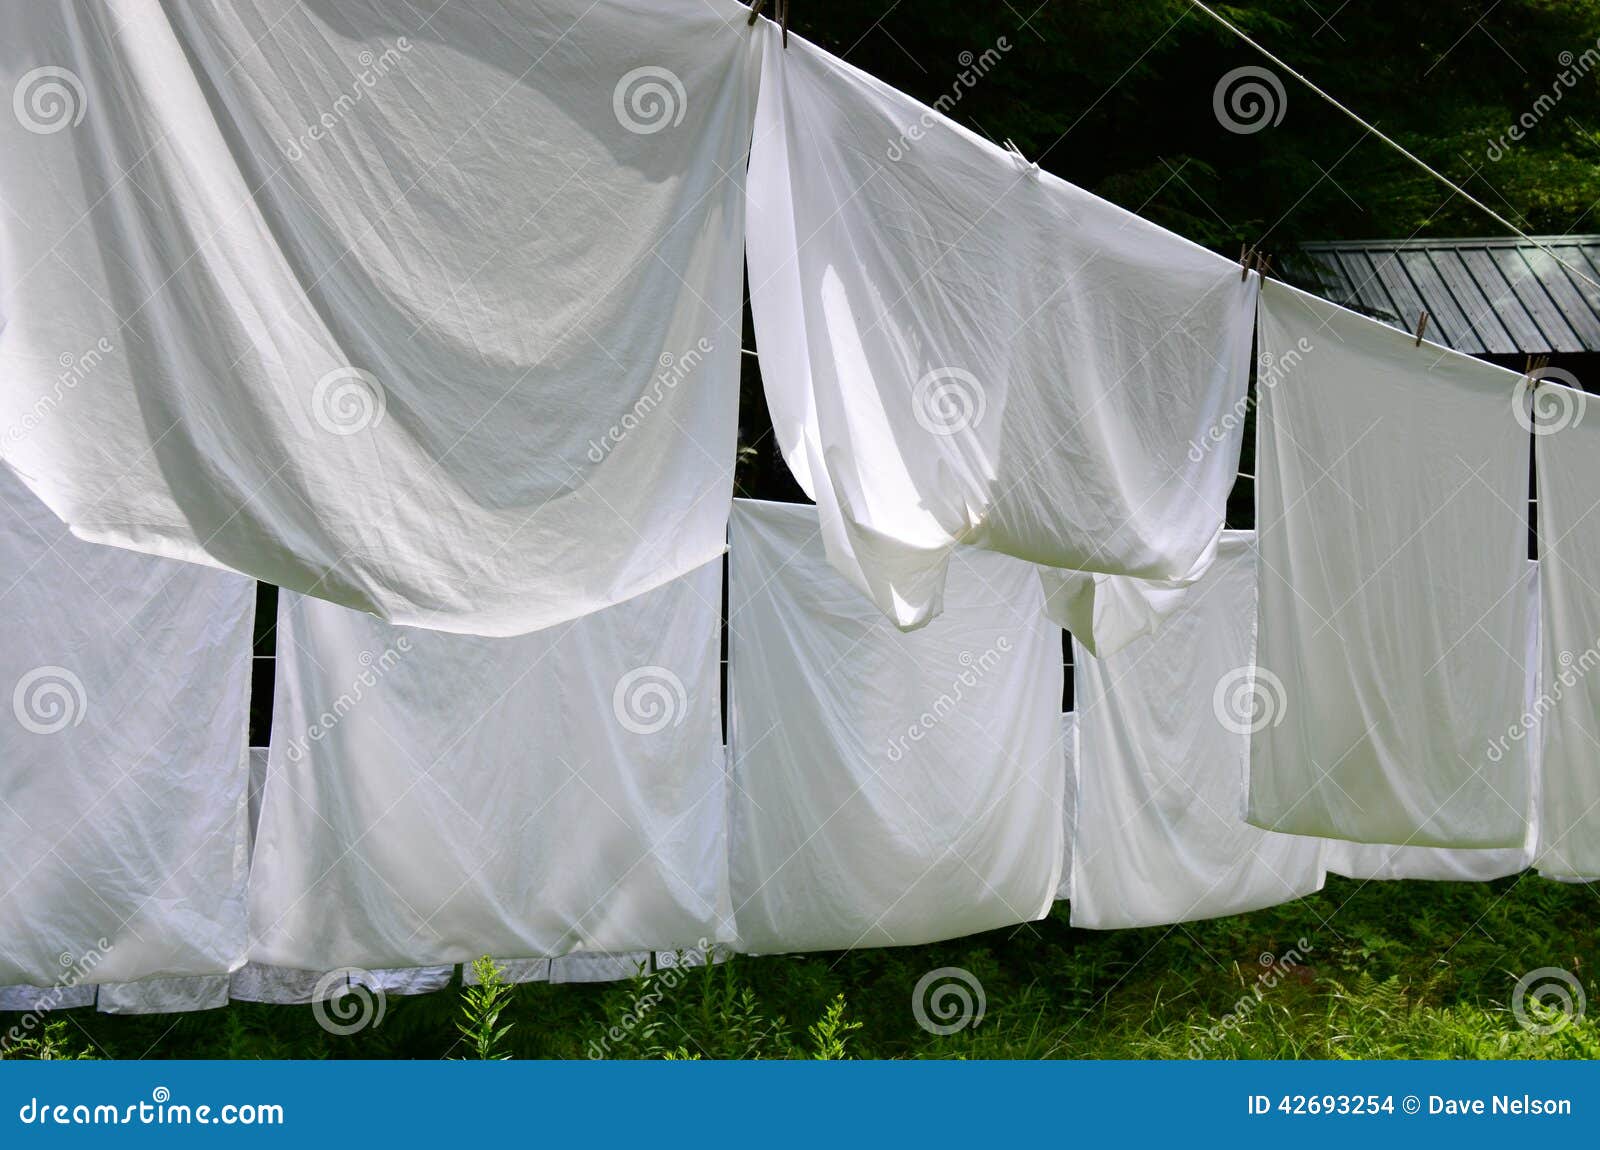 Laundry Day Stock Photo - Image: 42693254